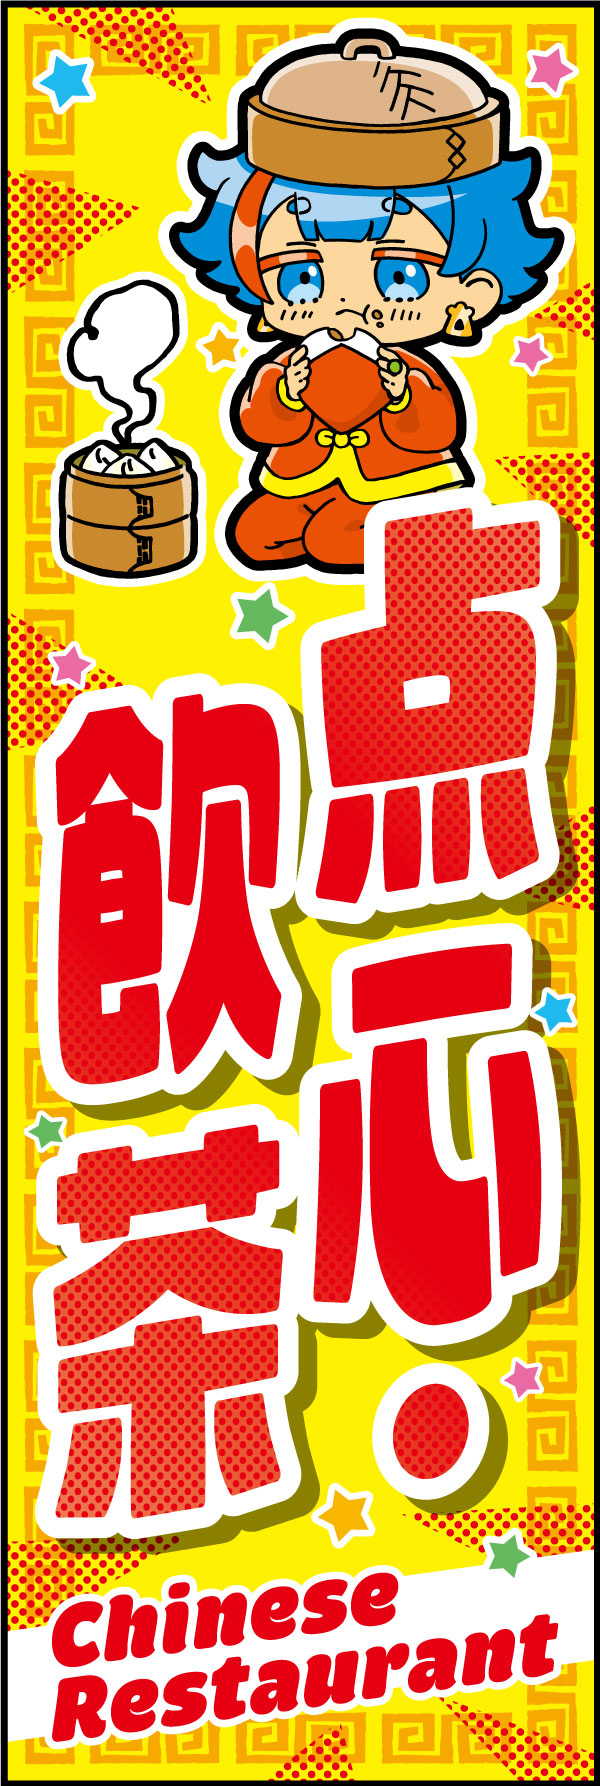 点心・飲茶 170_01 「点心・飲茶」のぼりです。「KAWAII」キャラクターと下部の英訳で訪日外国人の方々にアピールできます。（D.N）